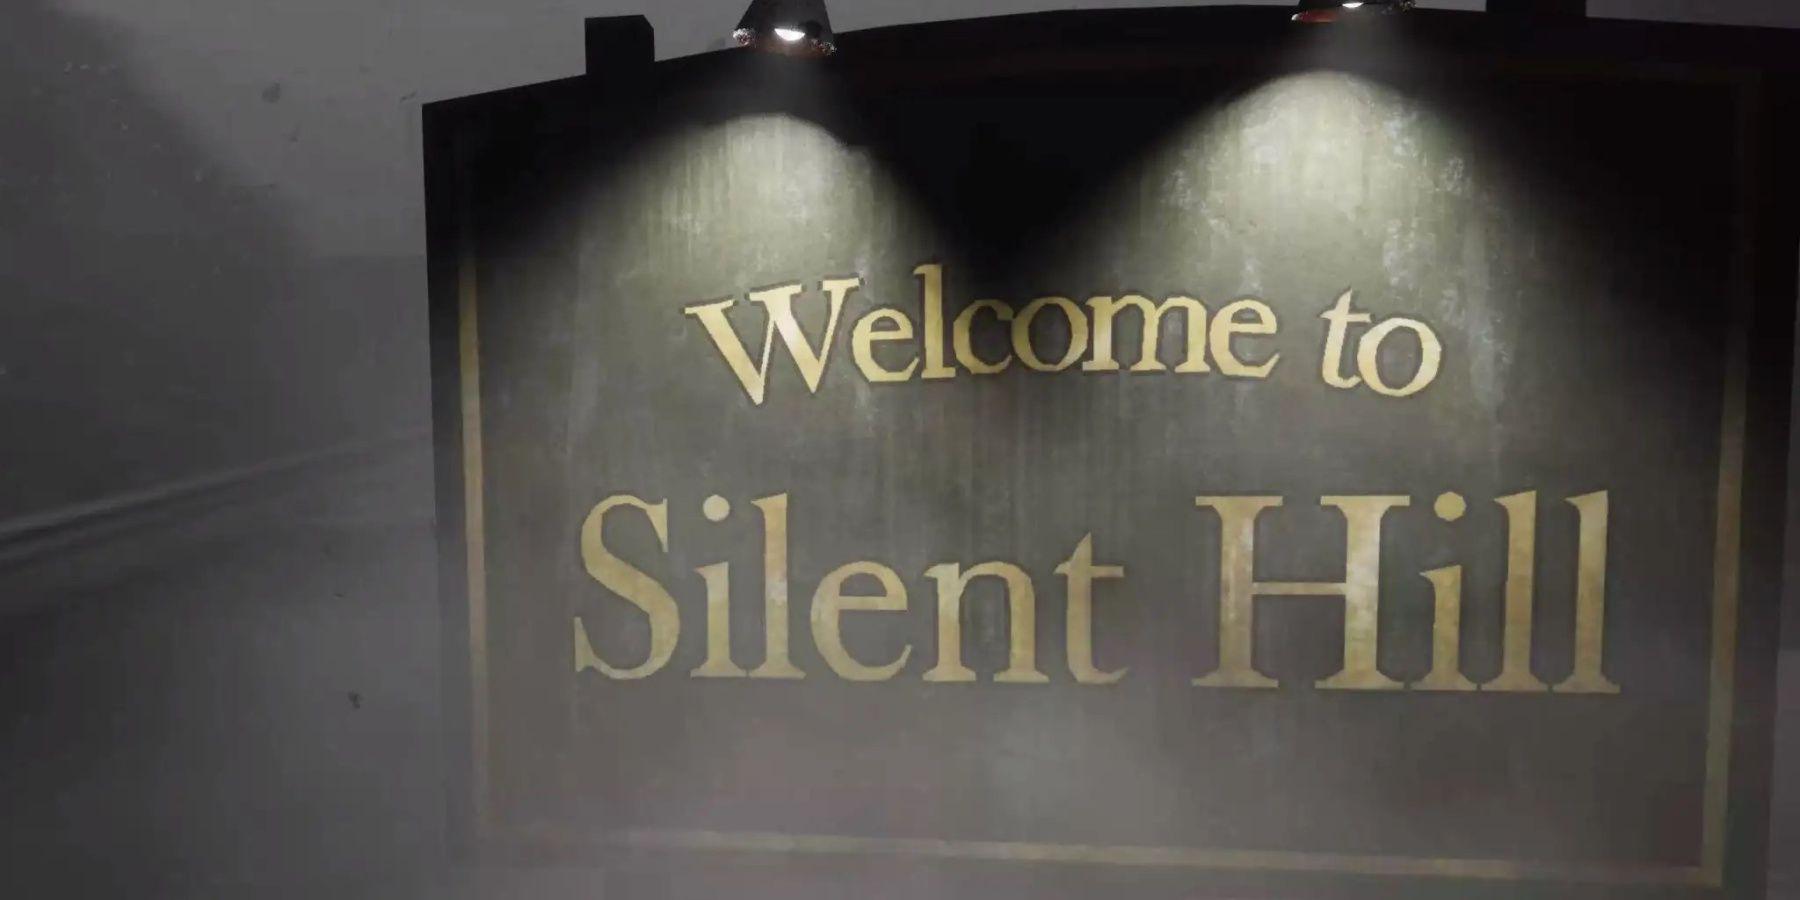 Konami convida desenvolvedores para lançar projetos de Silent Hill